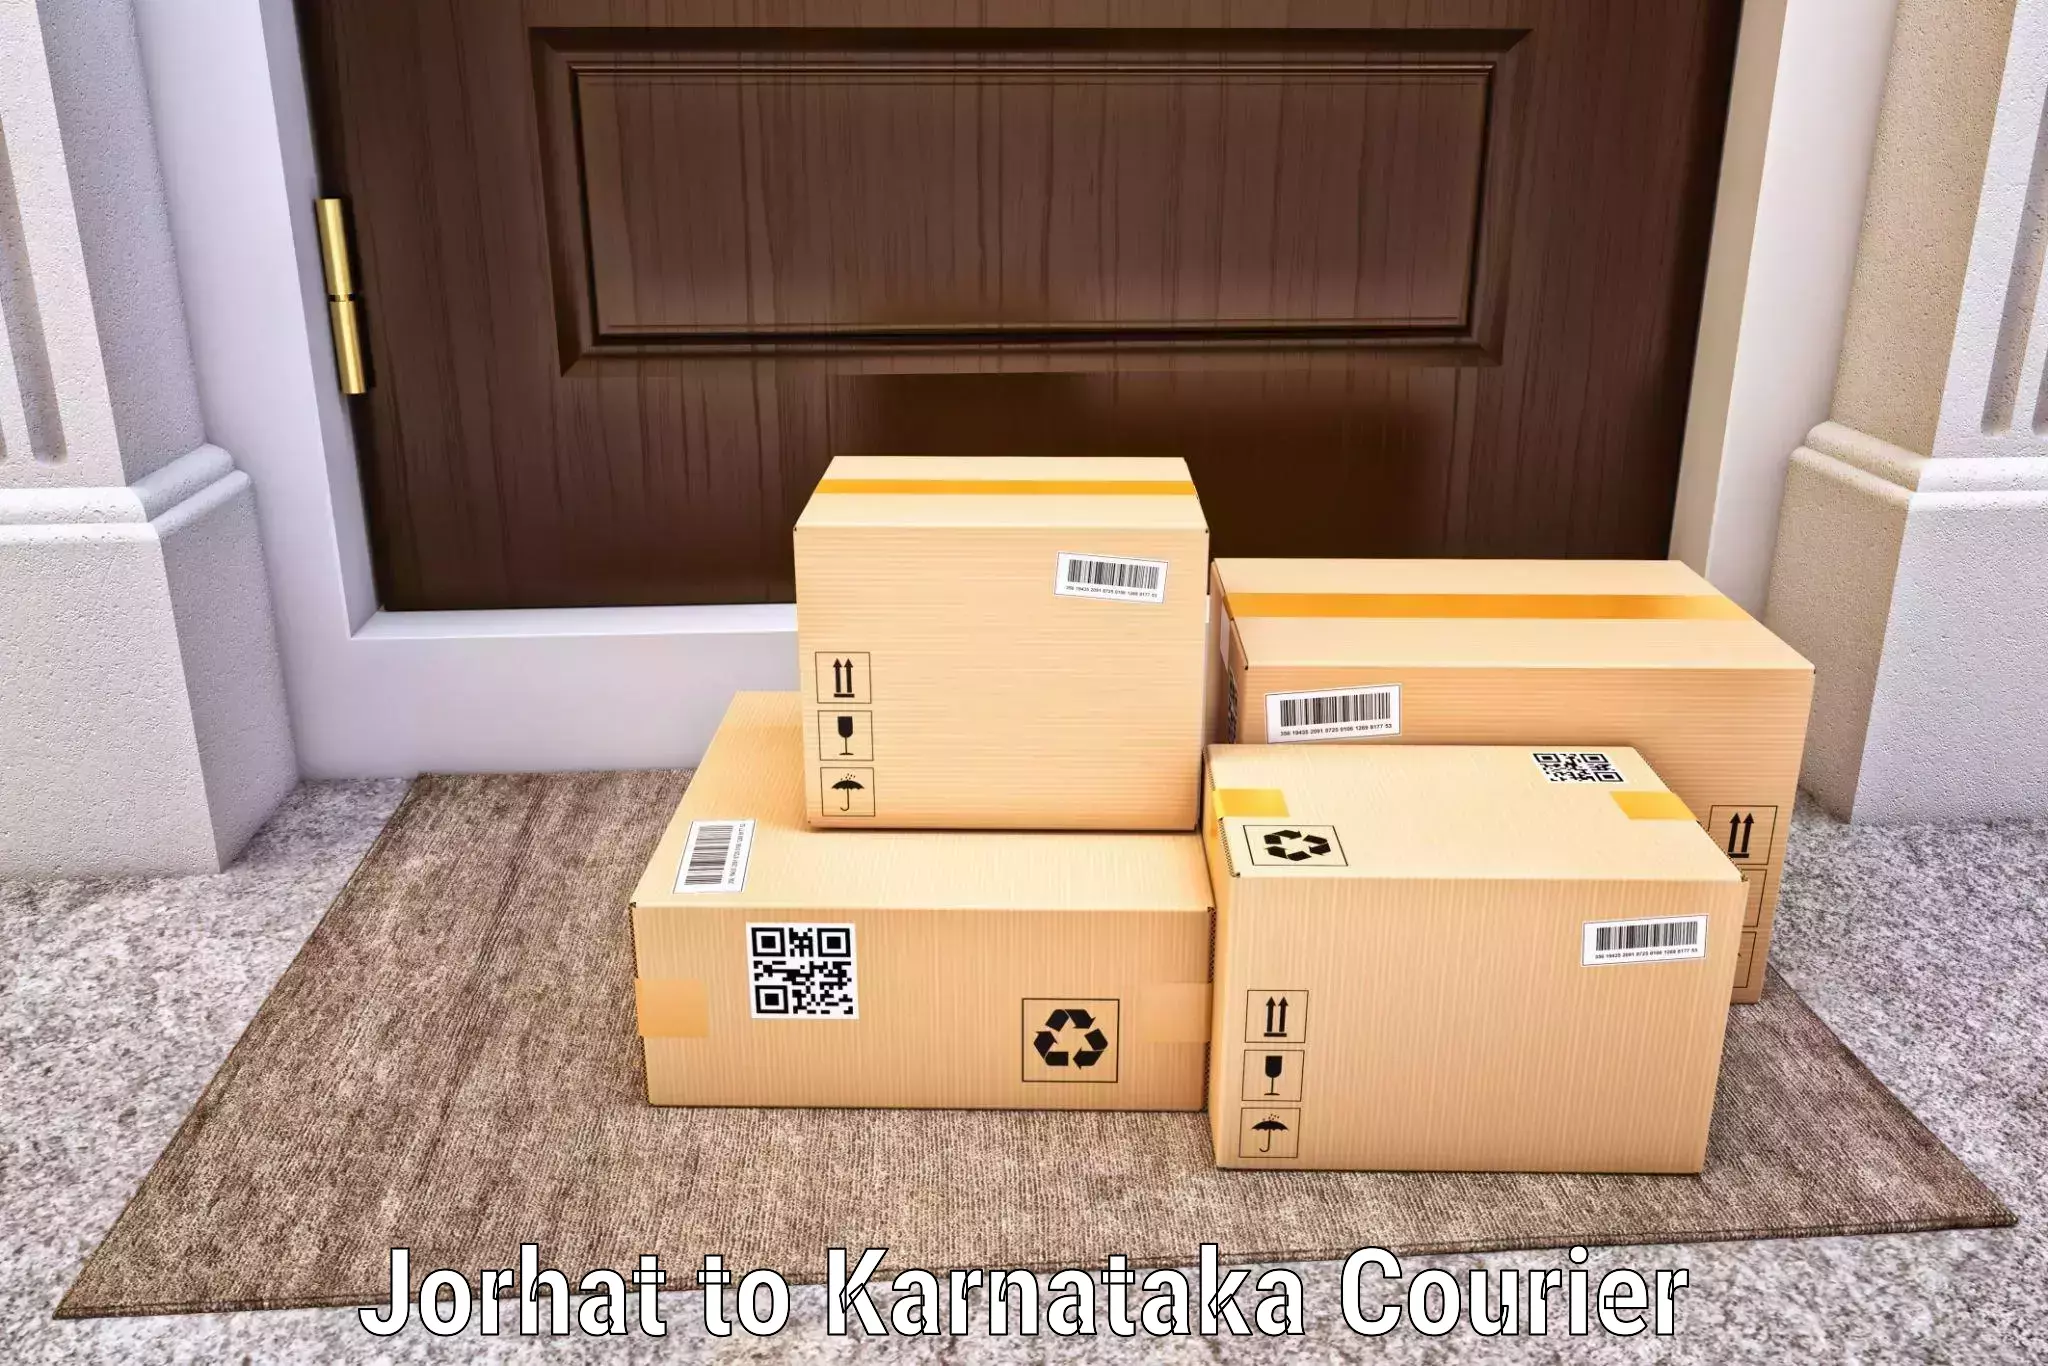 Custom courier packaging Jorhat to Yellapur